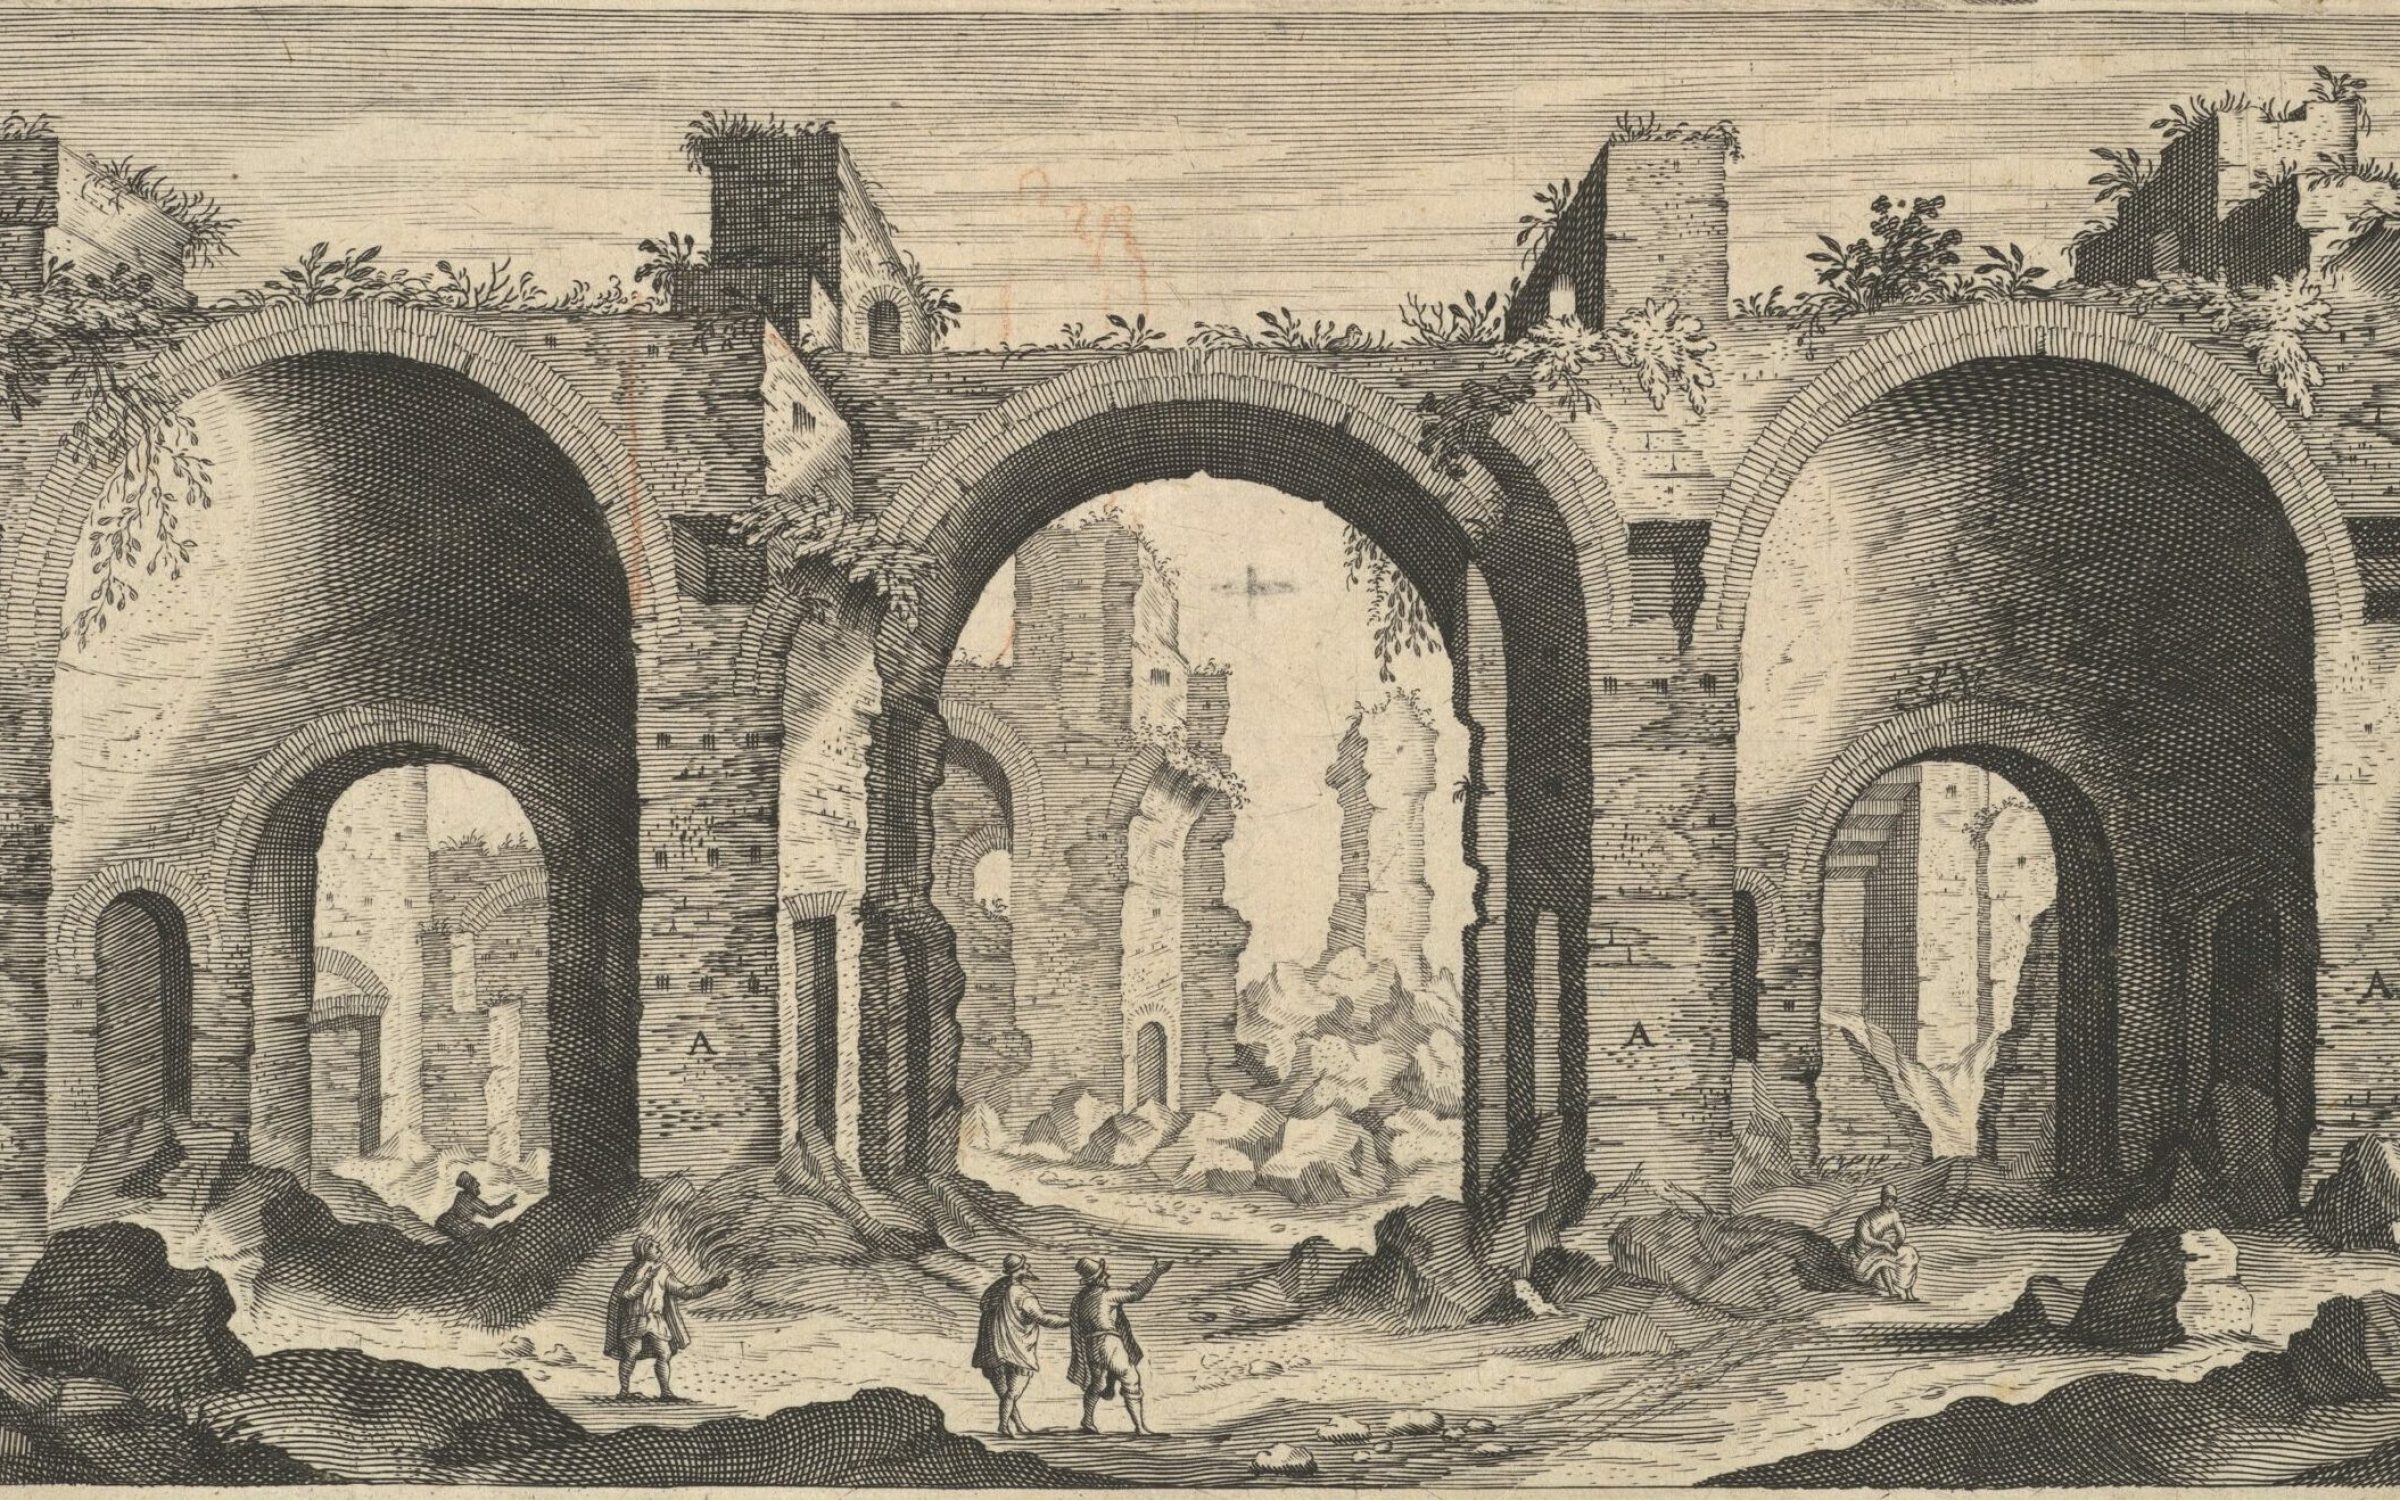 Baths of Caracalla by Aegidius Sadeler II, from Vestigi della antichità di Roma, Tivoli, Pozzvolo et altri luochi, 1606